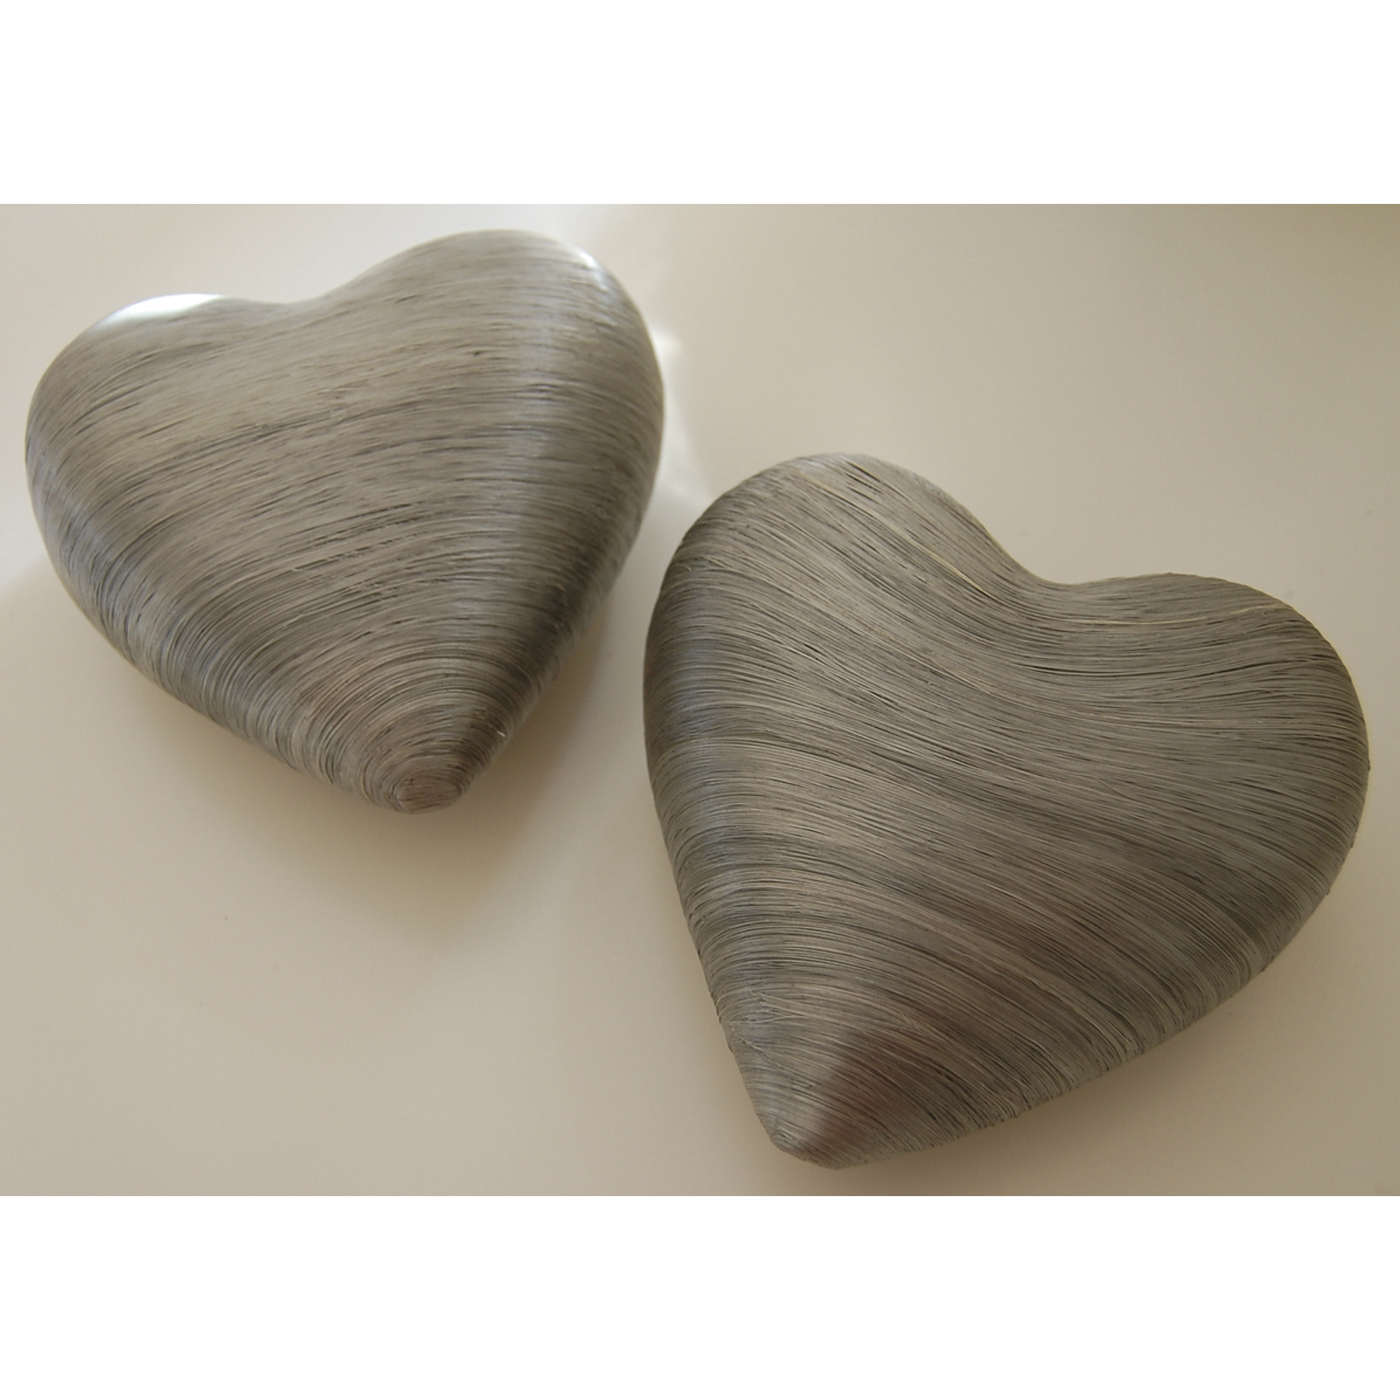 Decoration Hearts, Silver Grey, 120 mm - 3 pieces